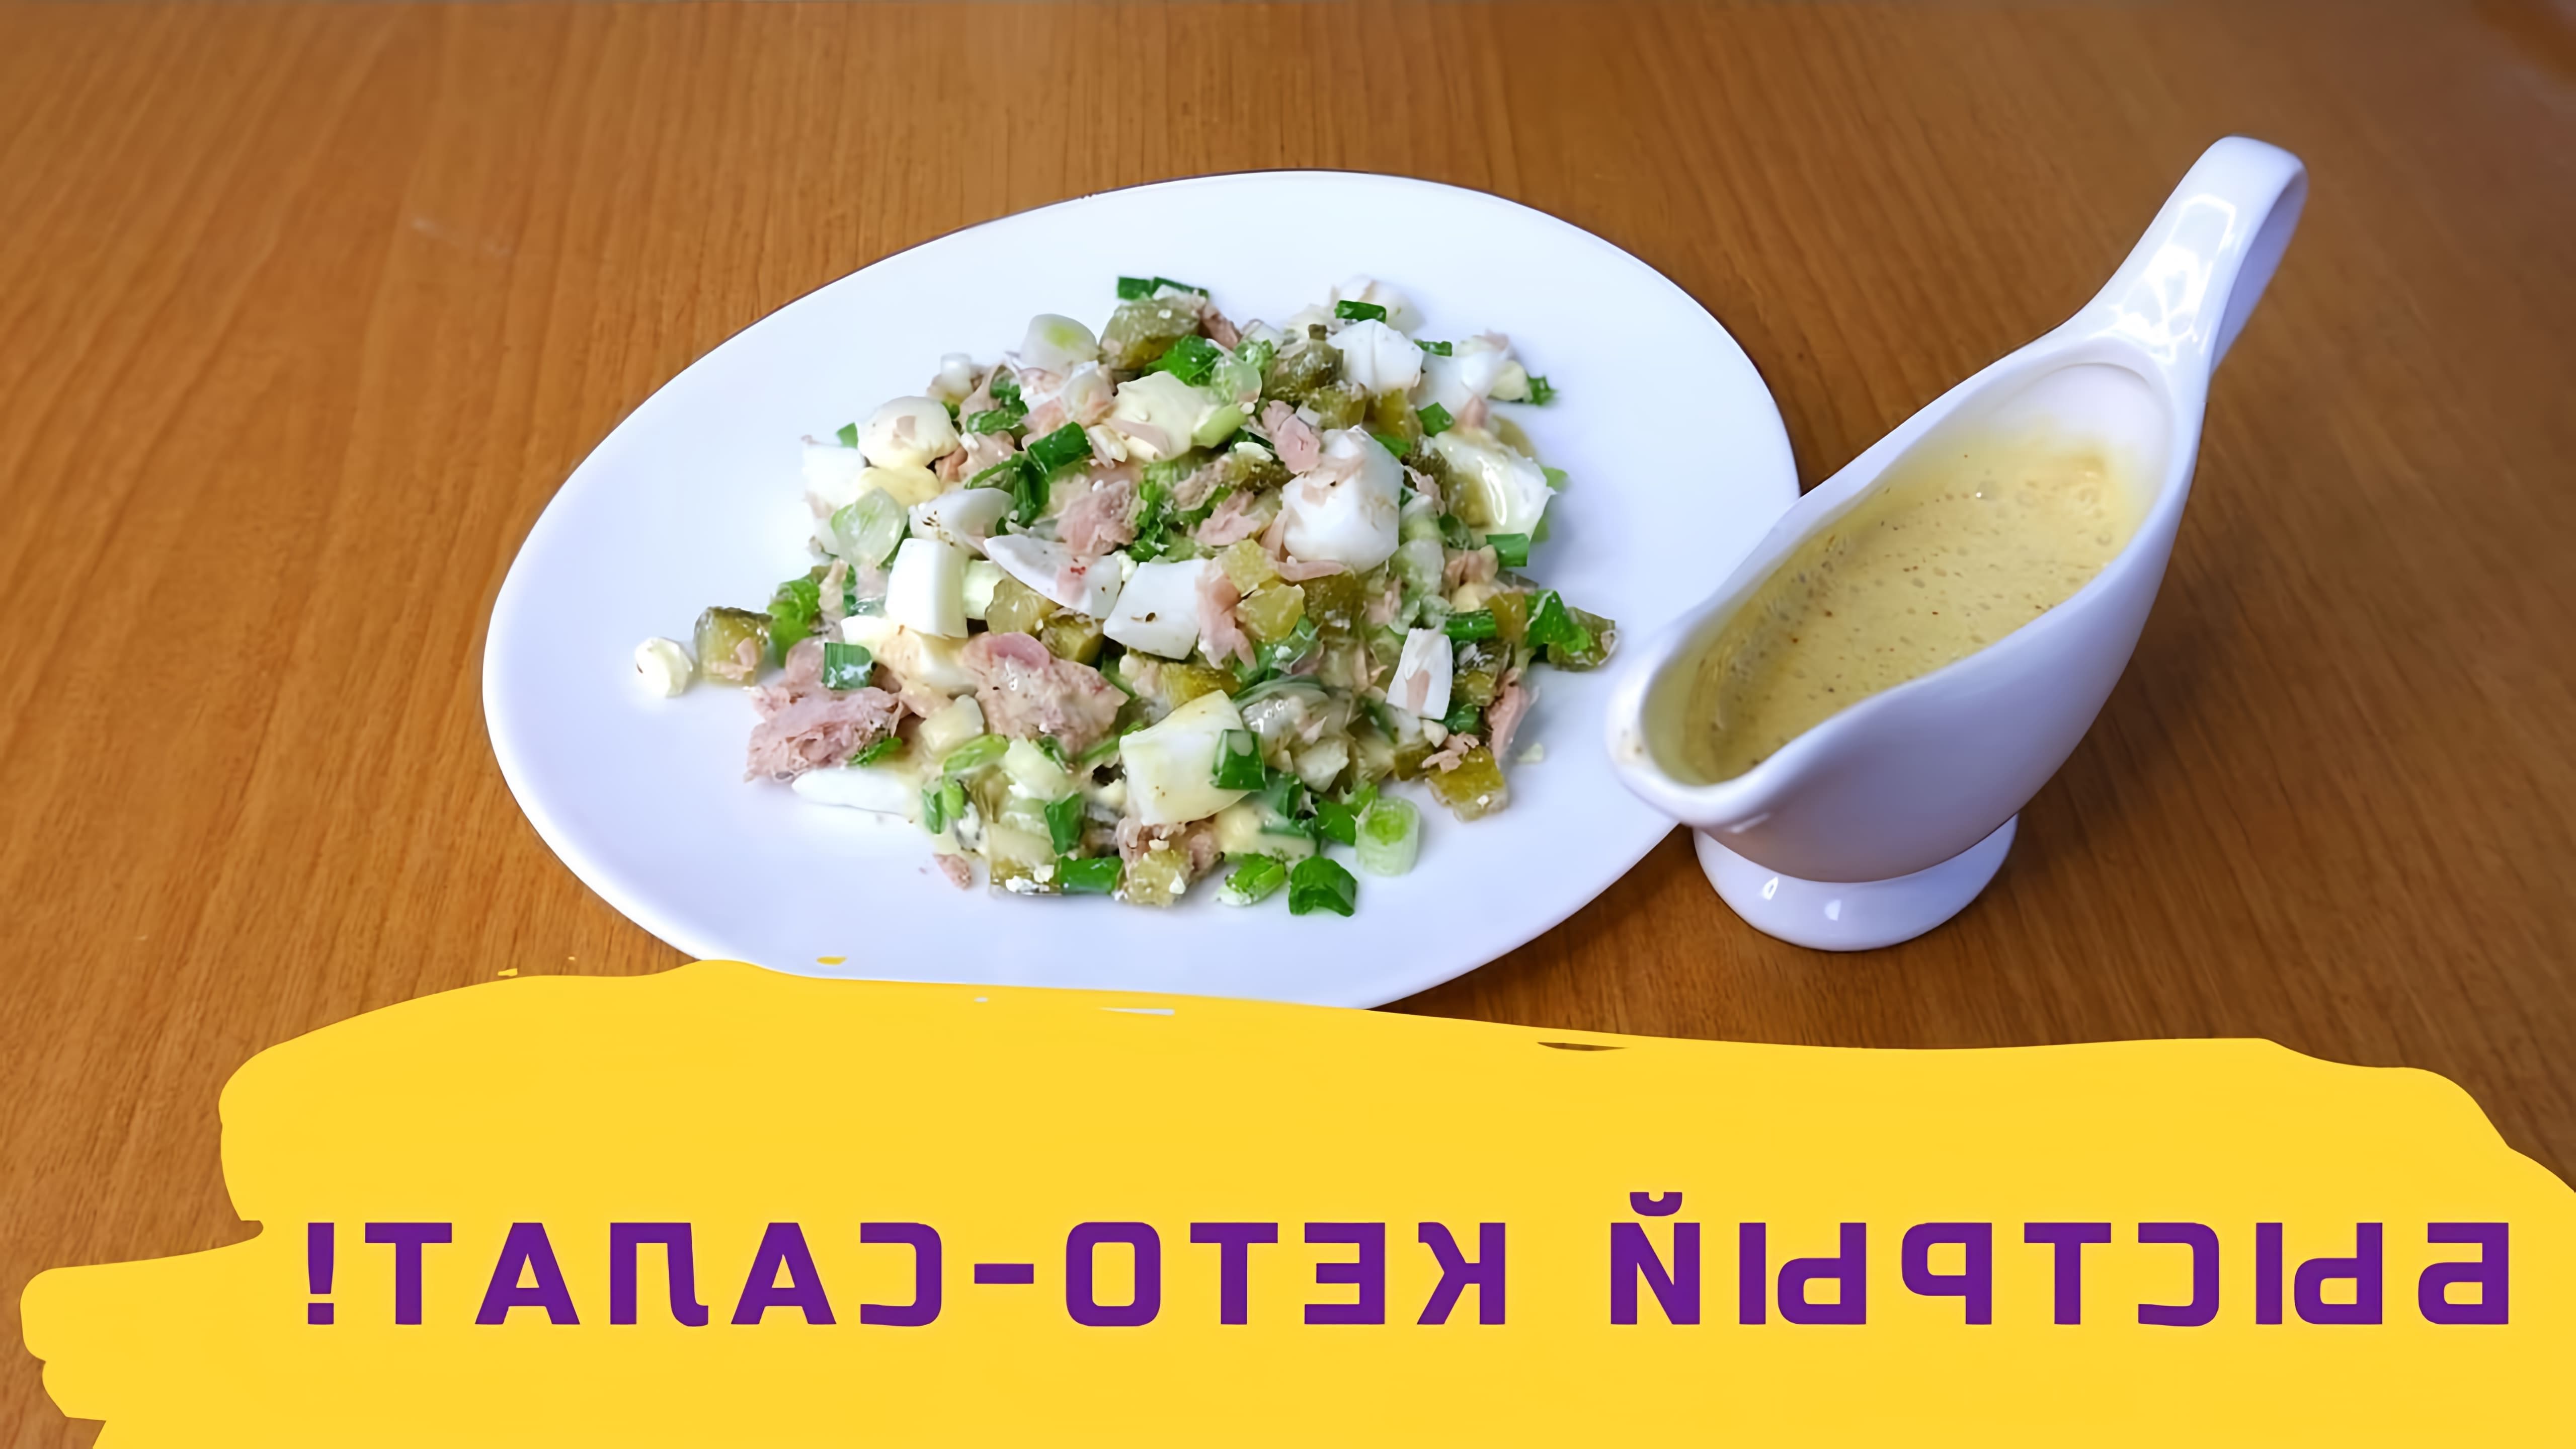 В этом видео демонстрируется быстрый и простой рецепт салата с тунцом, который готовится всего из четырех ингредиентов